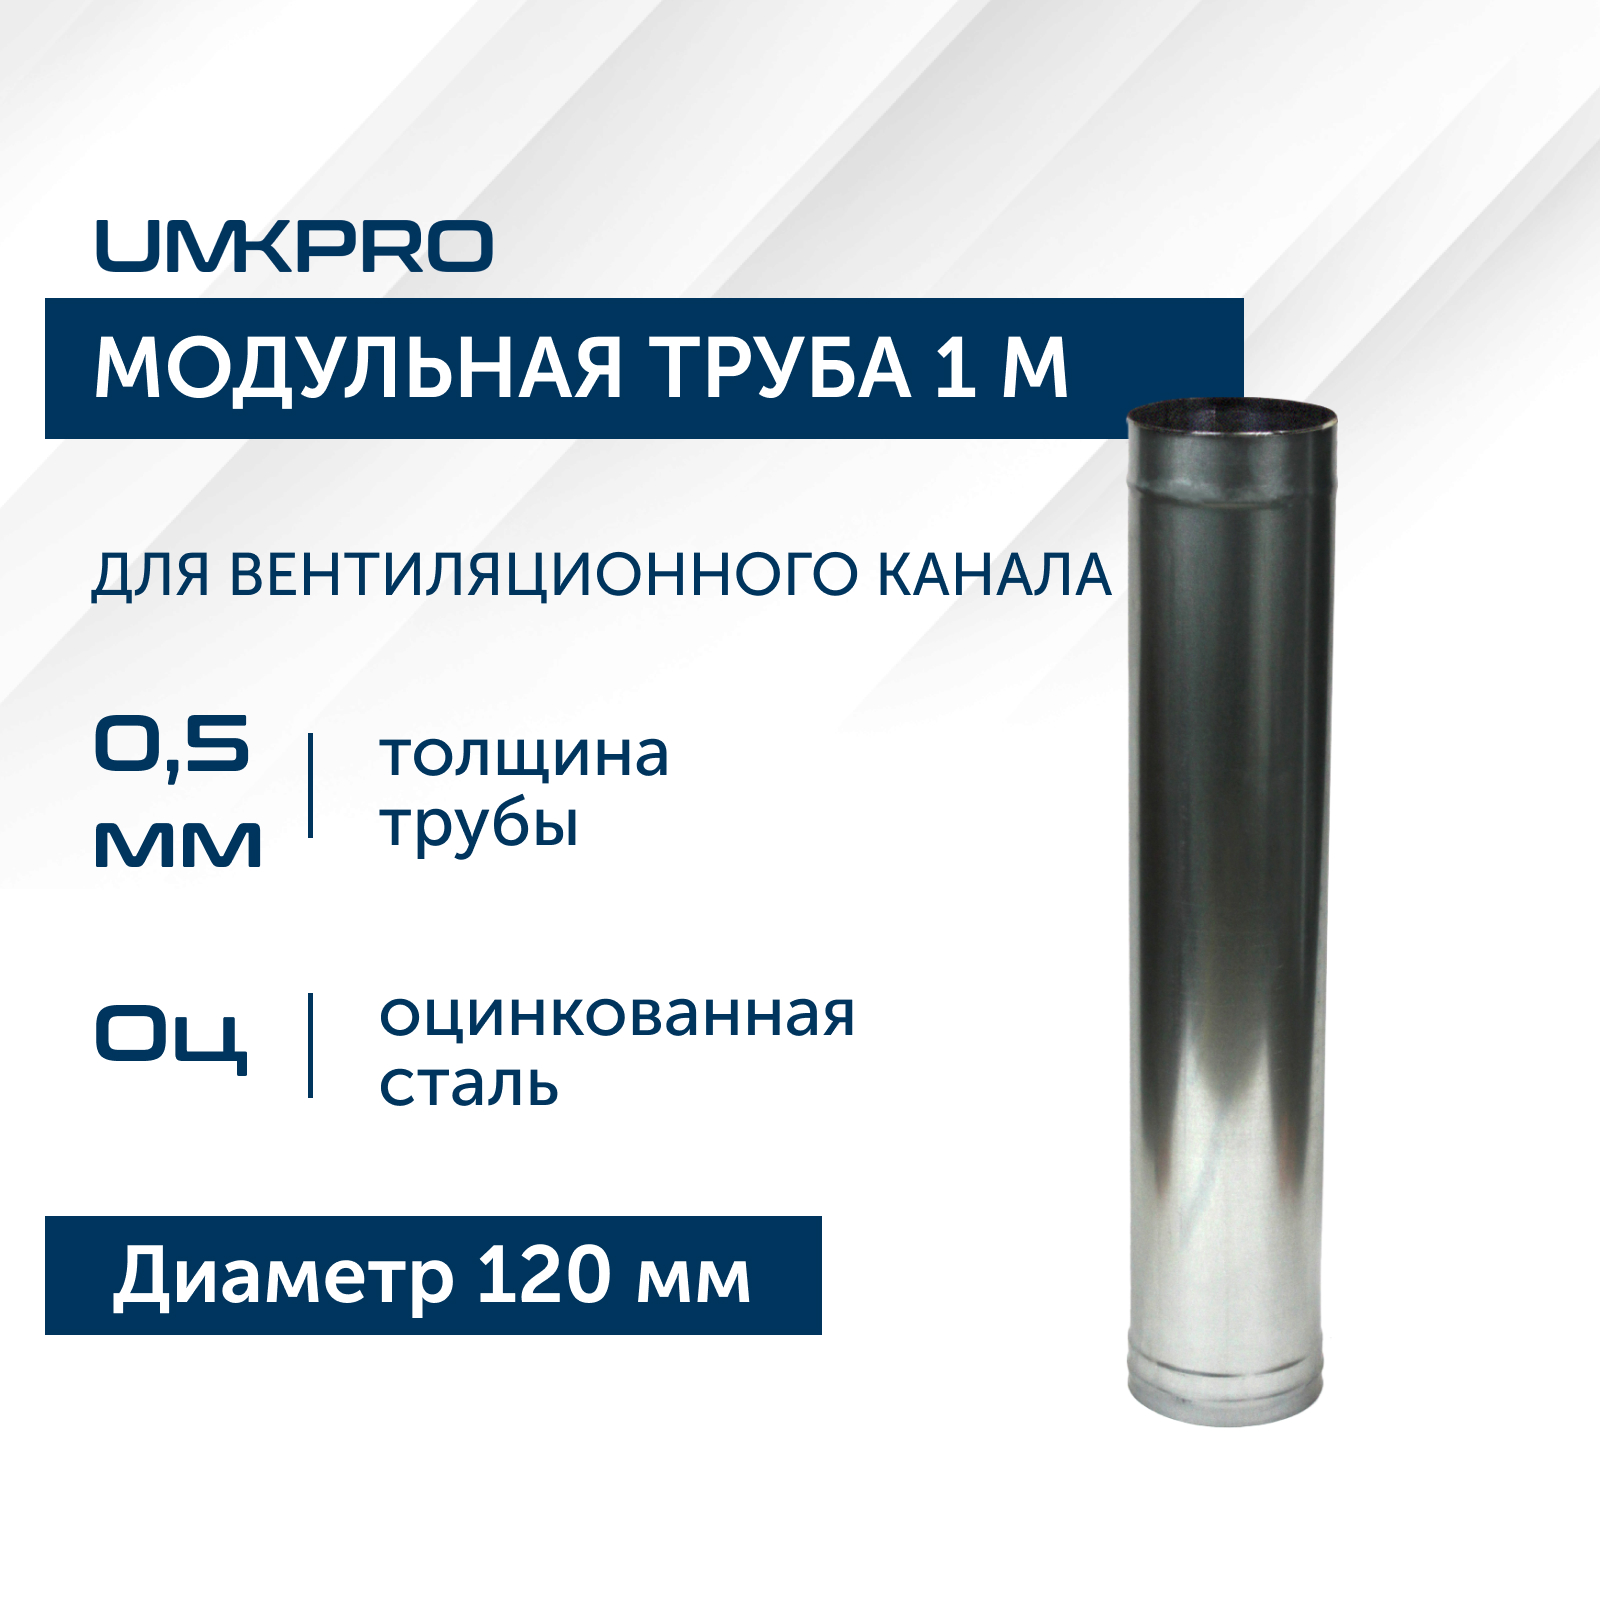 Труба модульная для дымохода 1 м UMKPRO D 120, Оц/0,5мм модульная гостиная порту 18 мдф